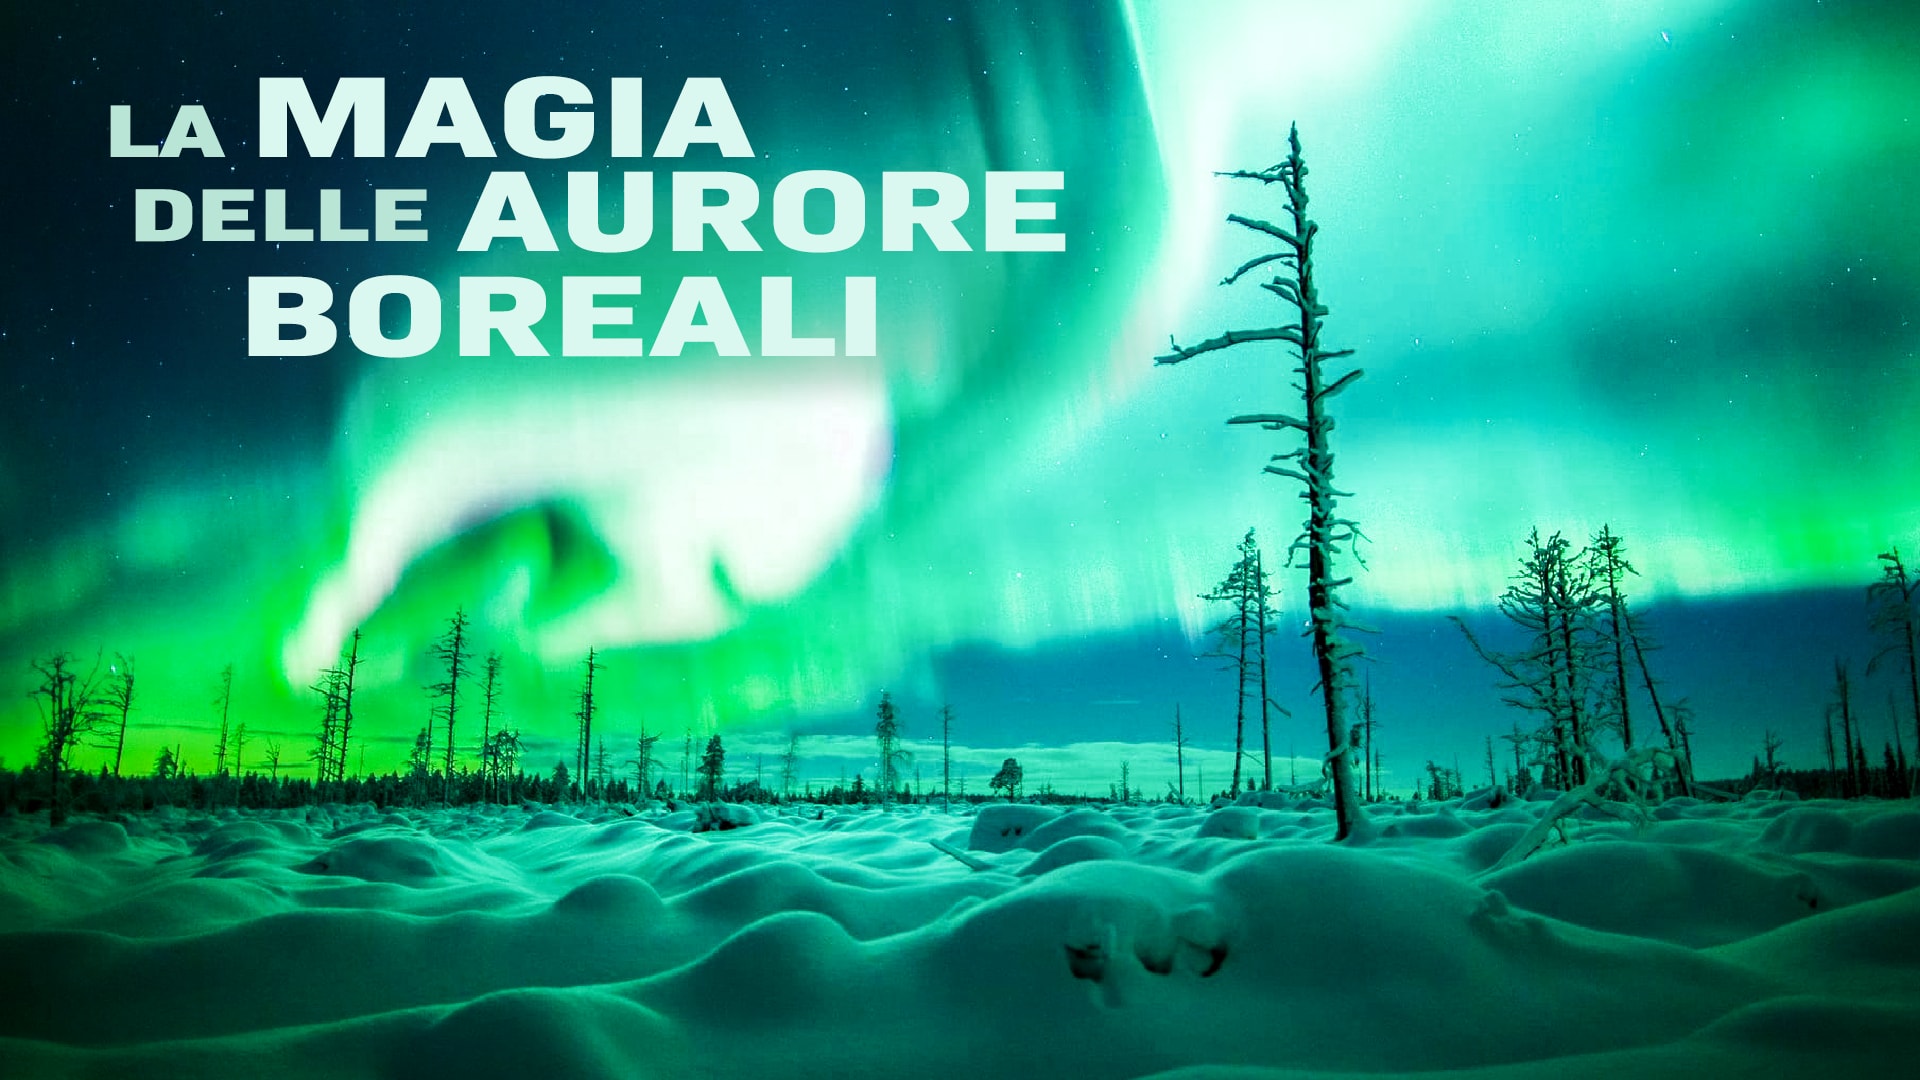 La magia delle aurore boreali